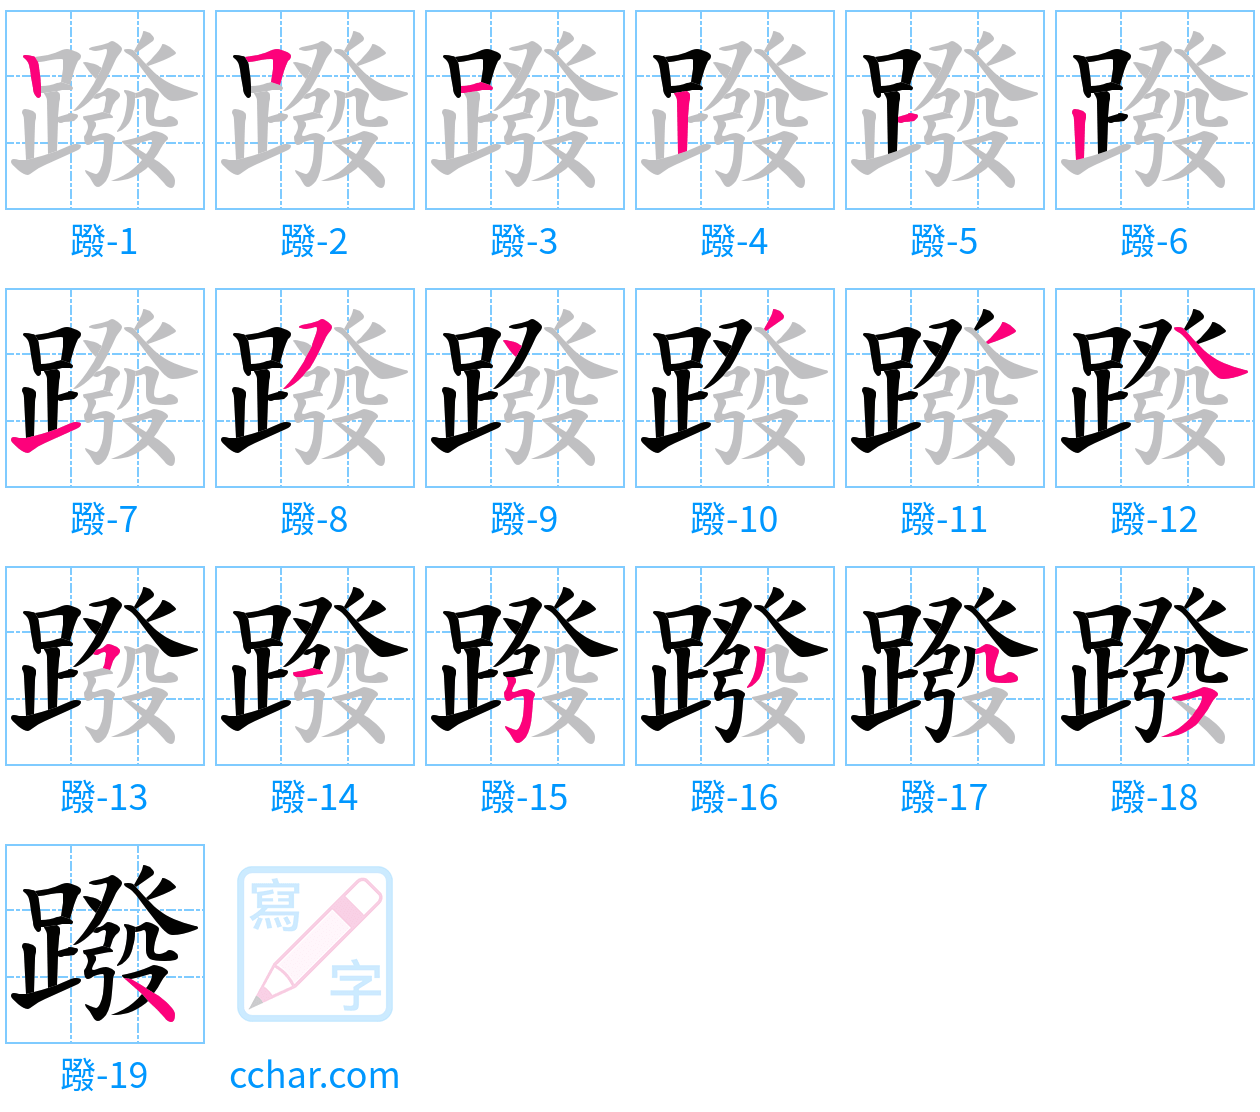 蹳 stroke order step-by-step diagram